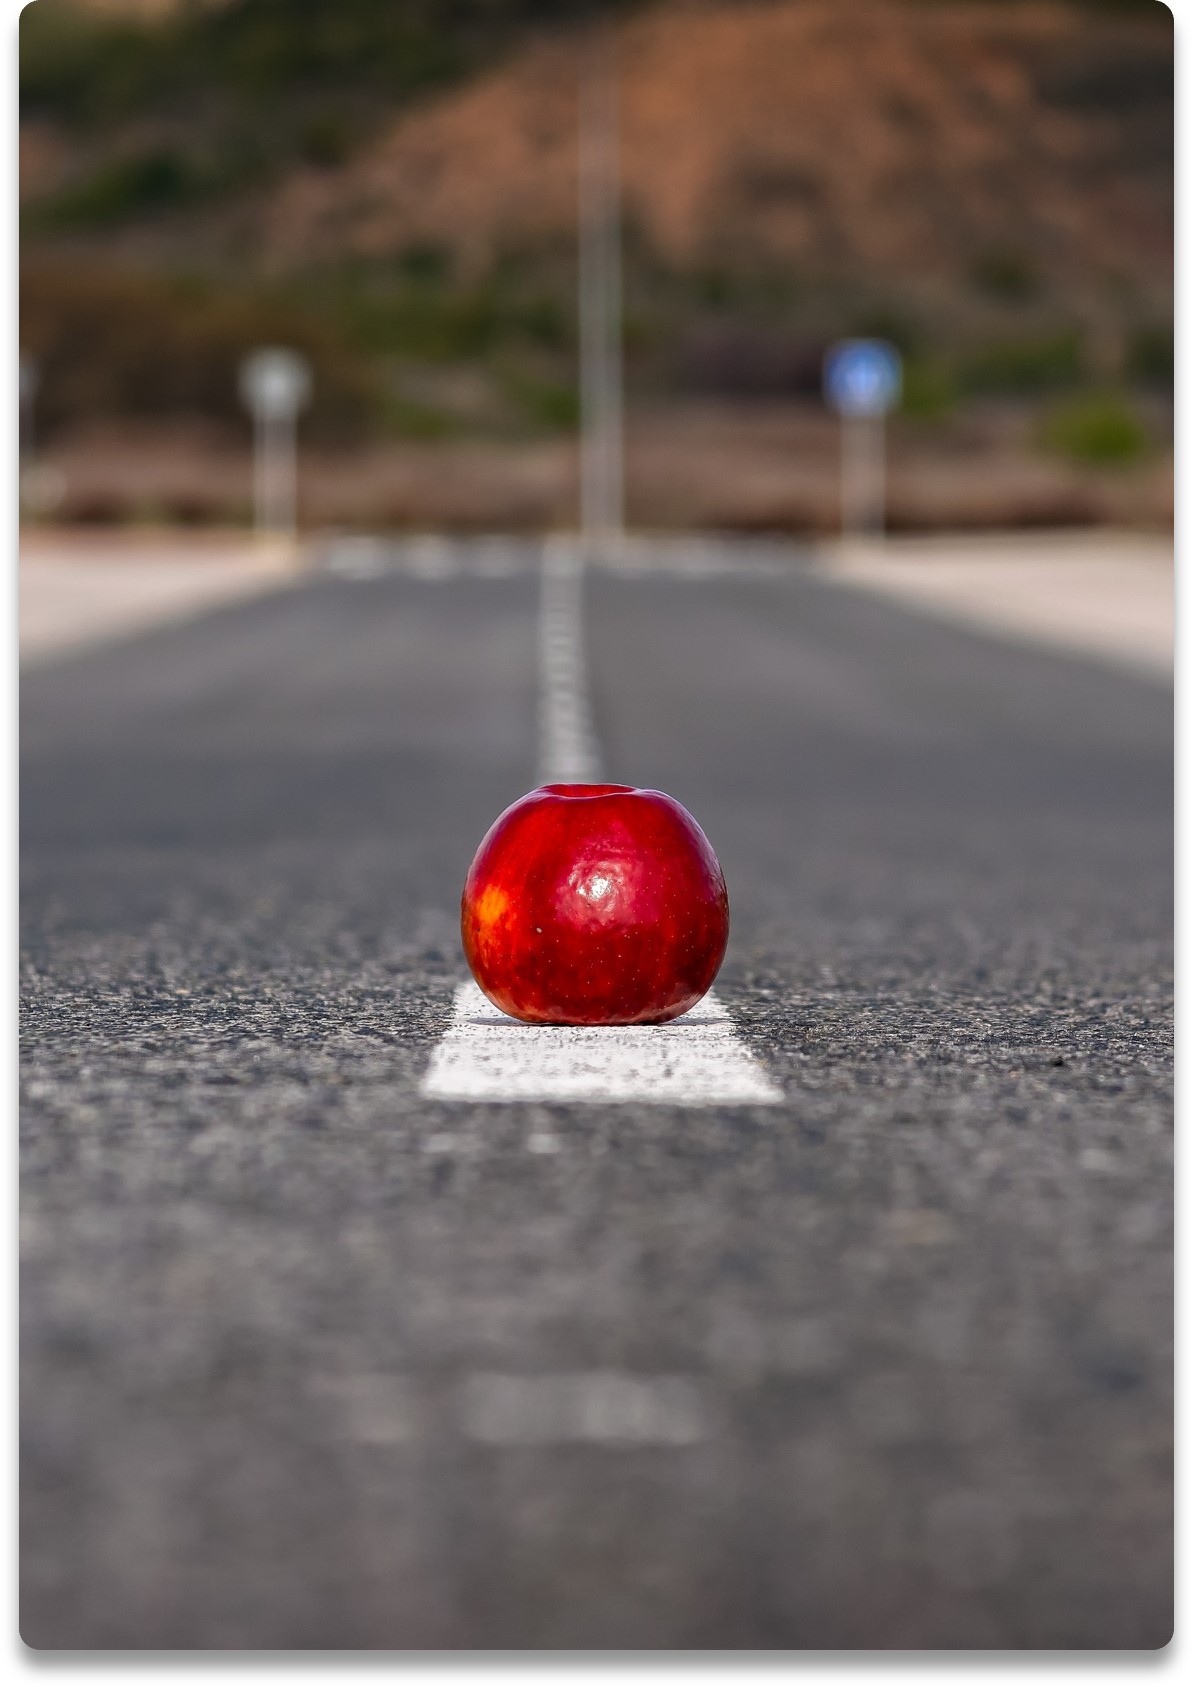 Ett rött äpple på mitt-strecket av en vägbana. Bilden symboliserar möjligheter.